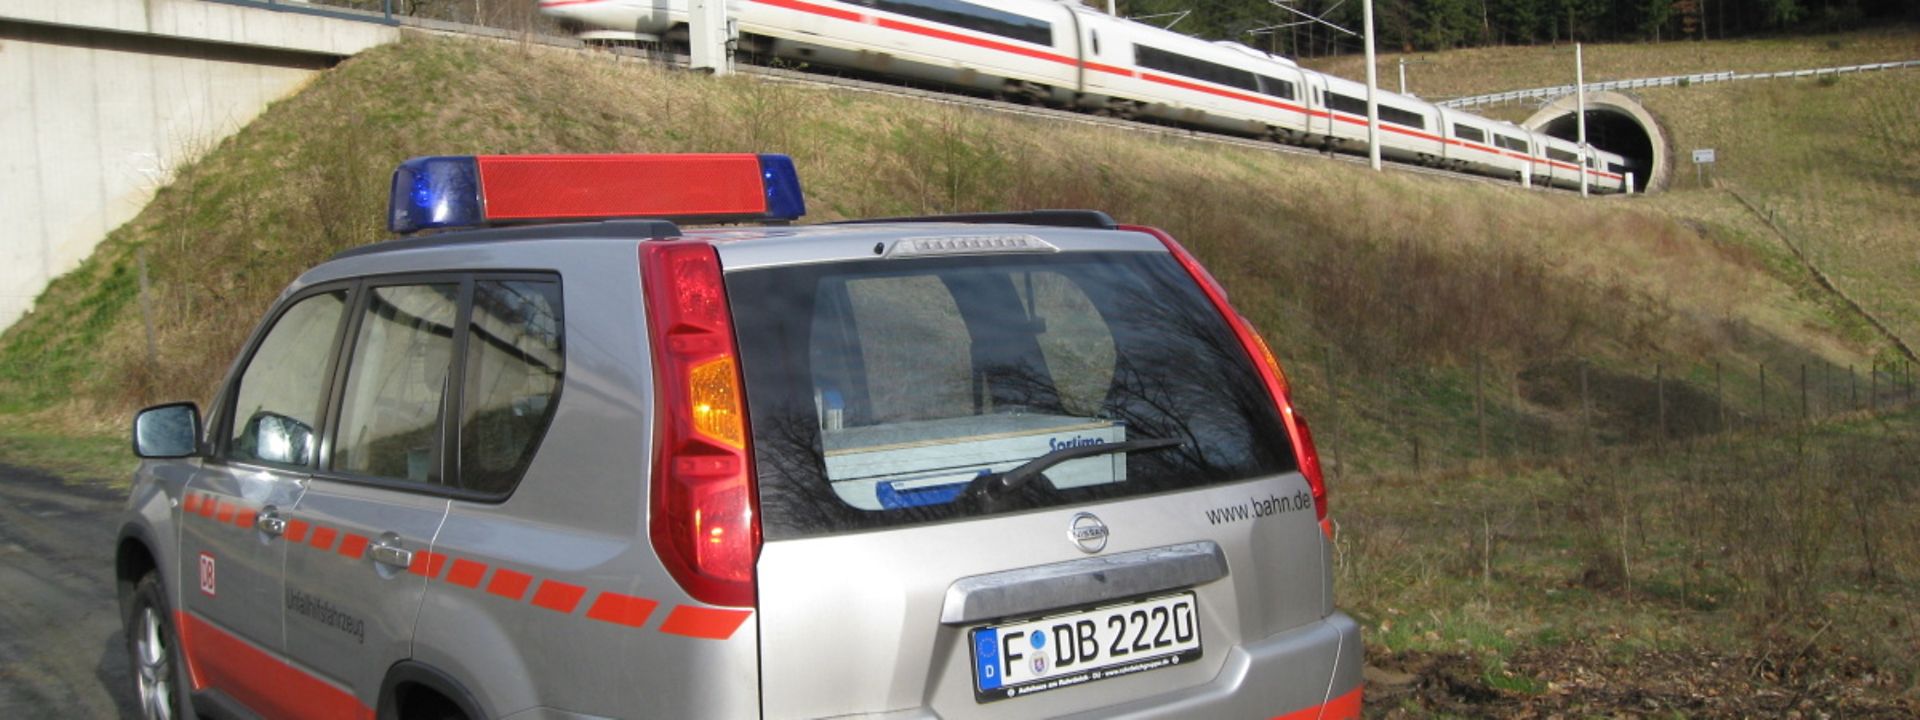 Einsatzfahrzeug eines Notfallmanagers der DB Netz AG